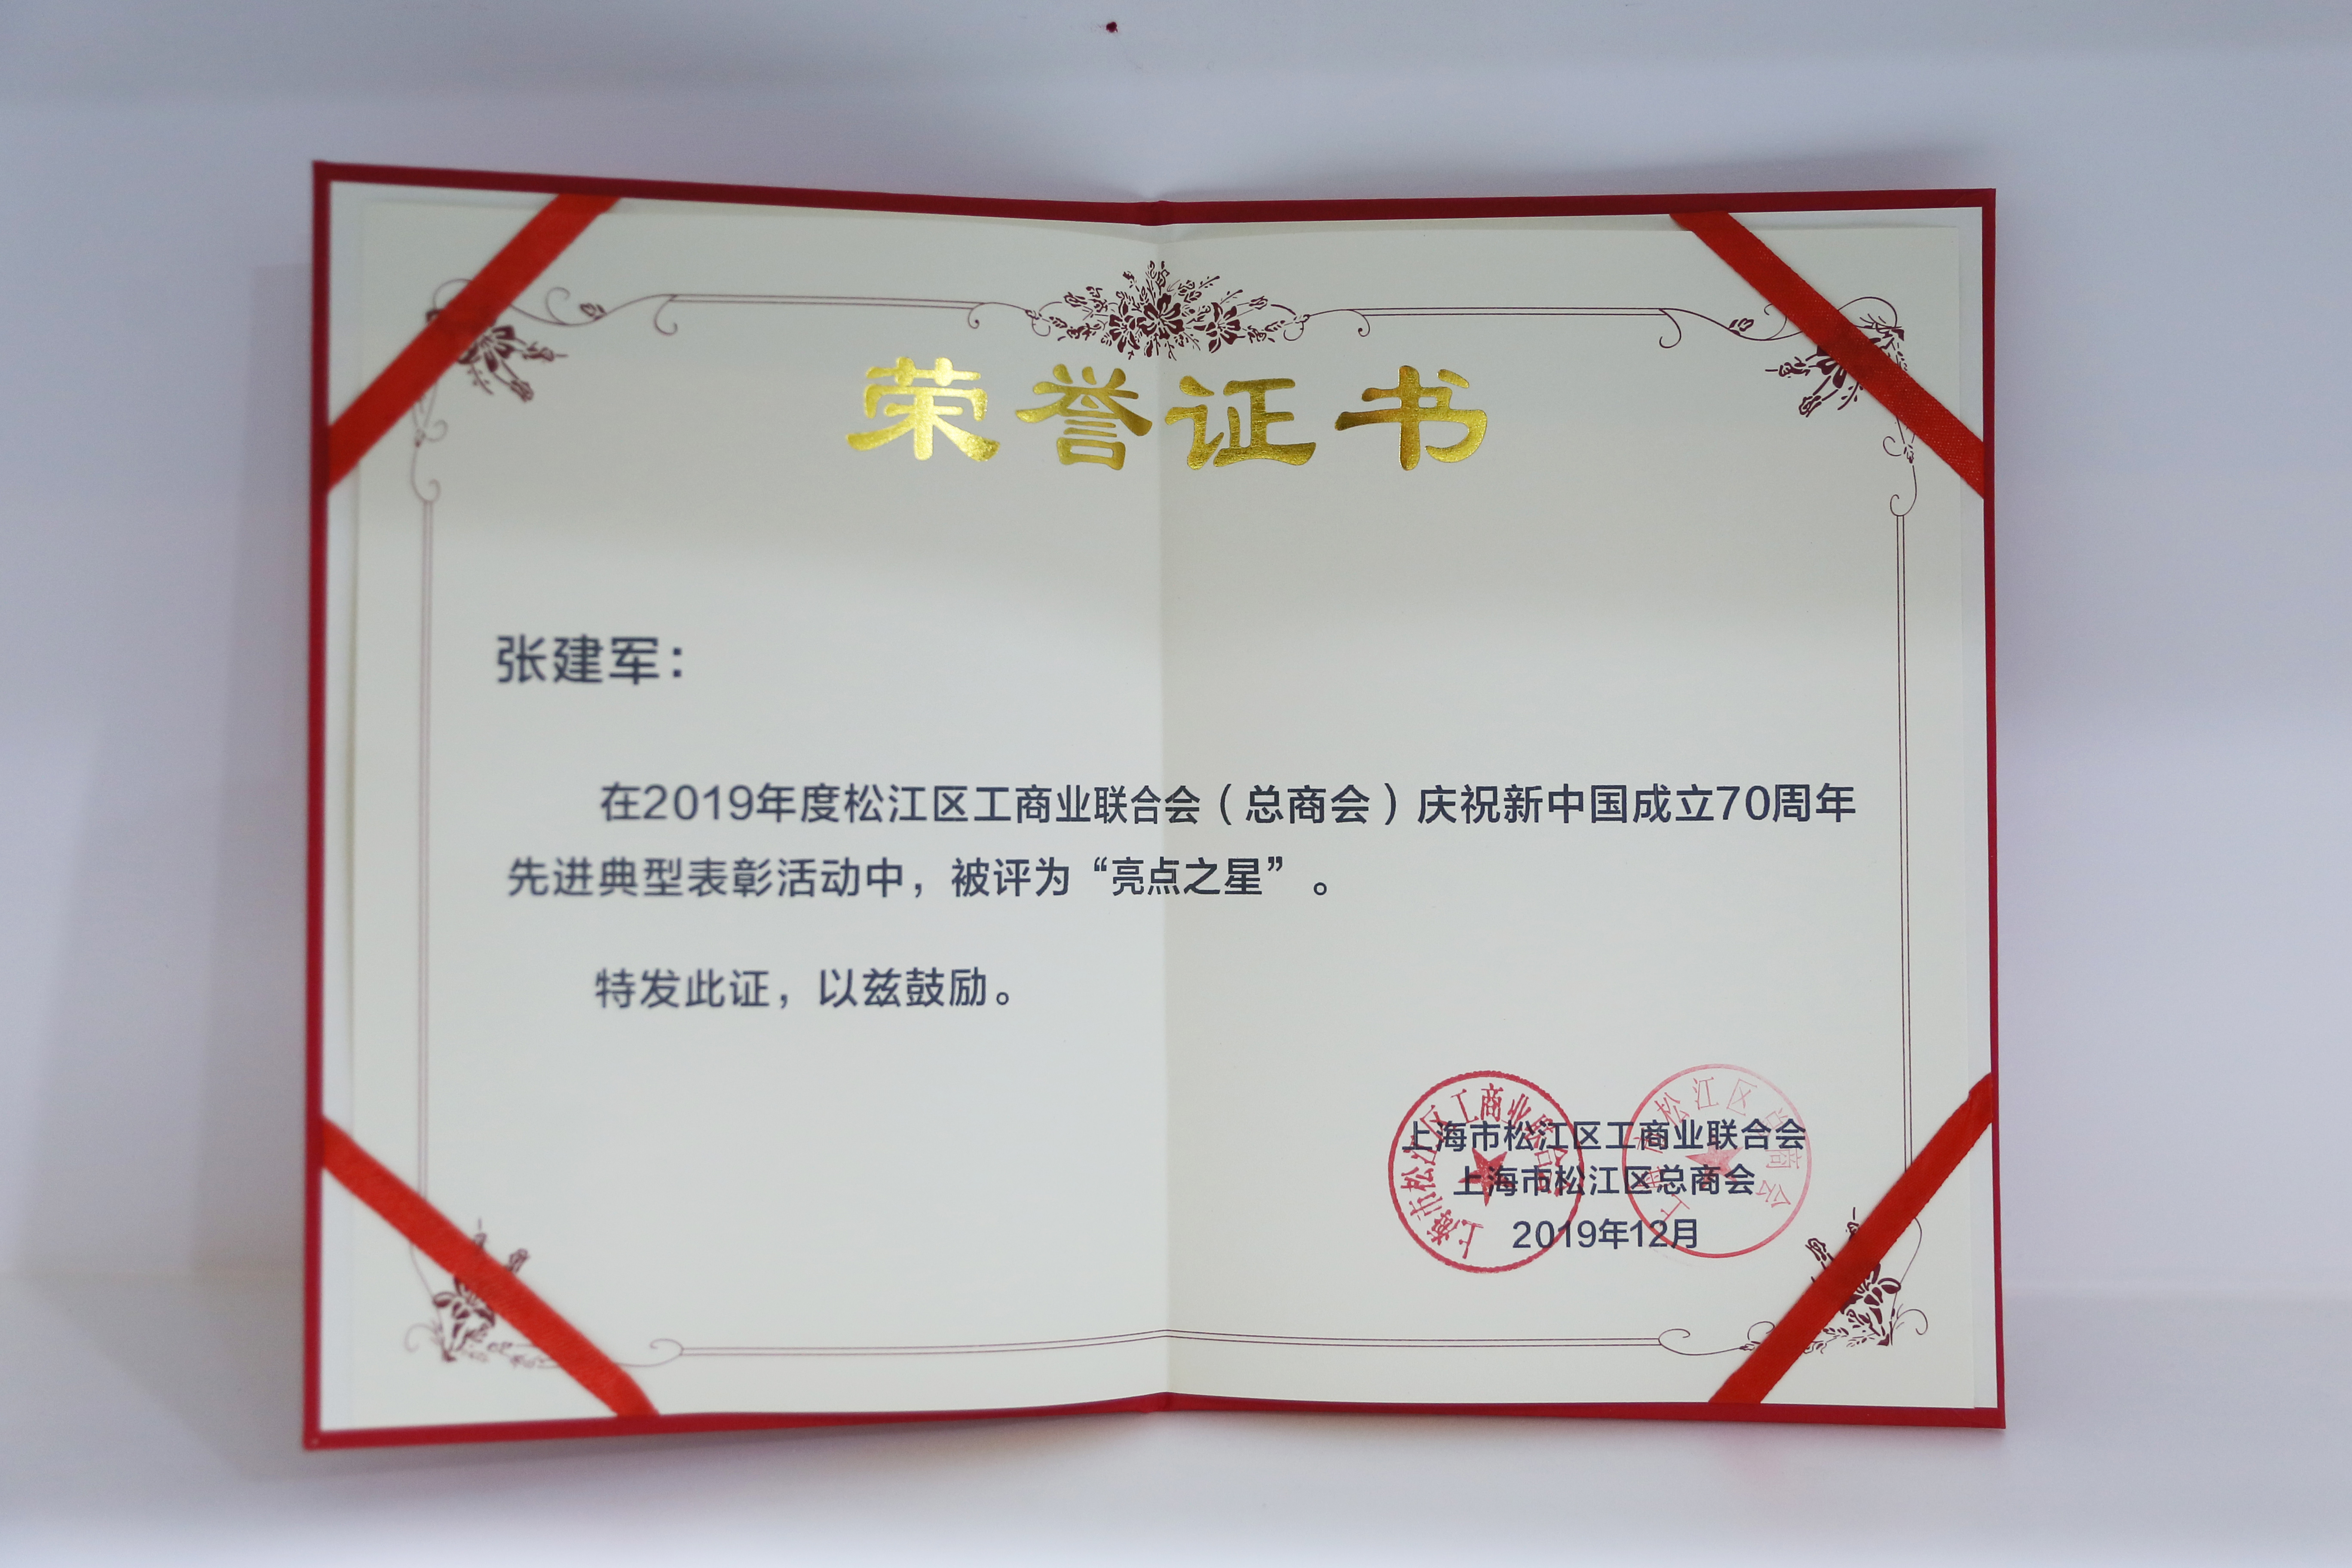 2019年企福集团总裁张建军荣获庆祝新中国成立70周年先进典型表彰活动“亮点之星”称号.jpg